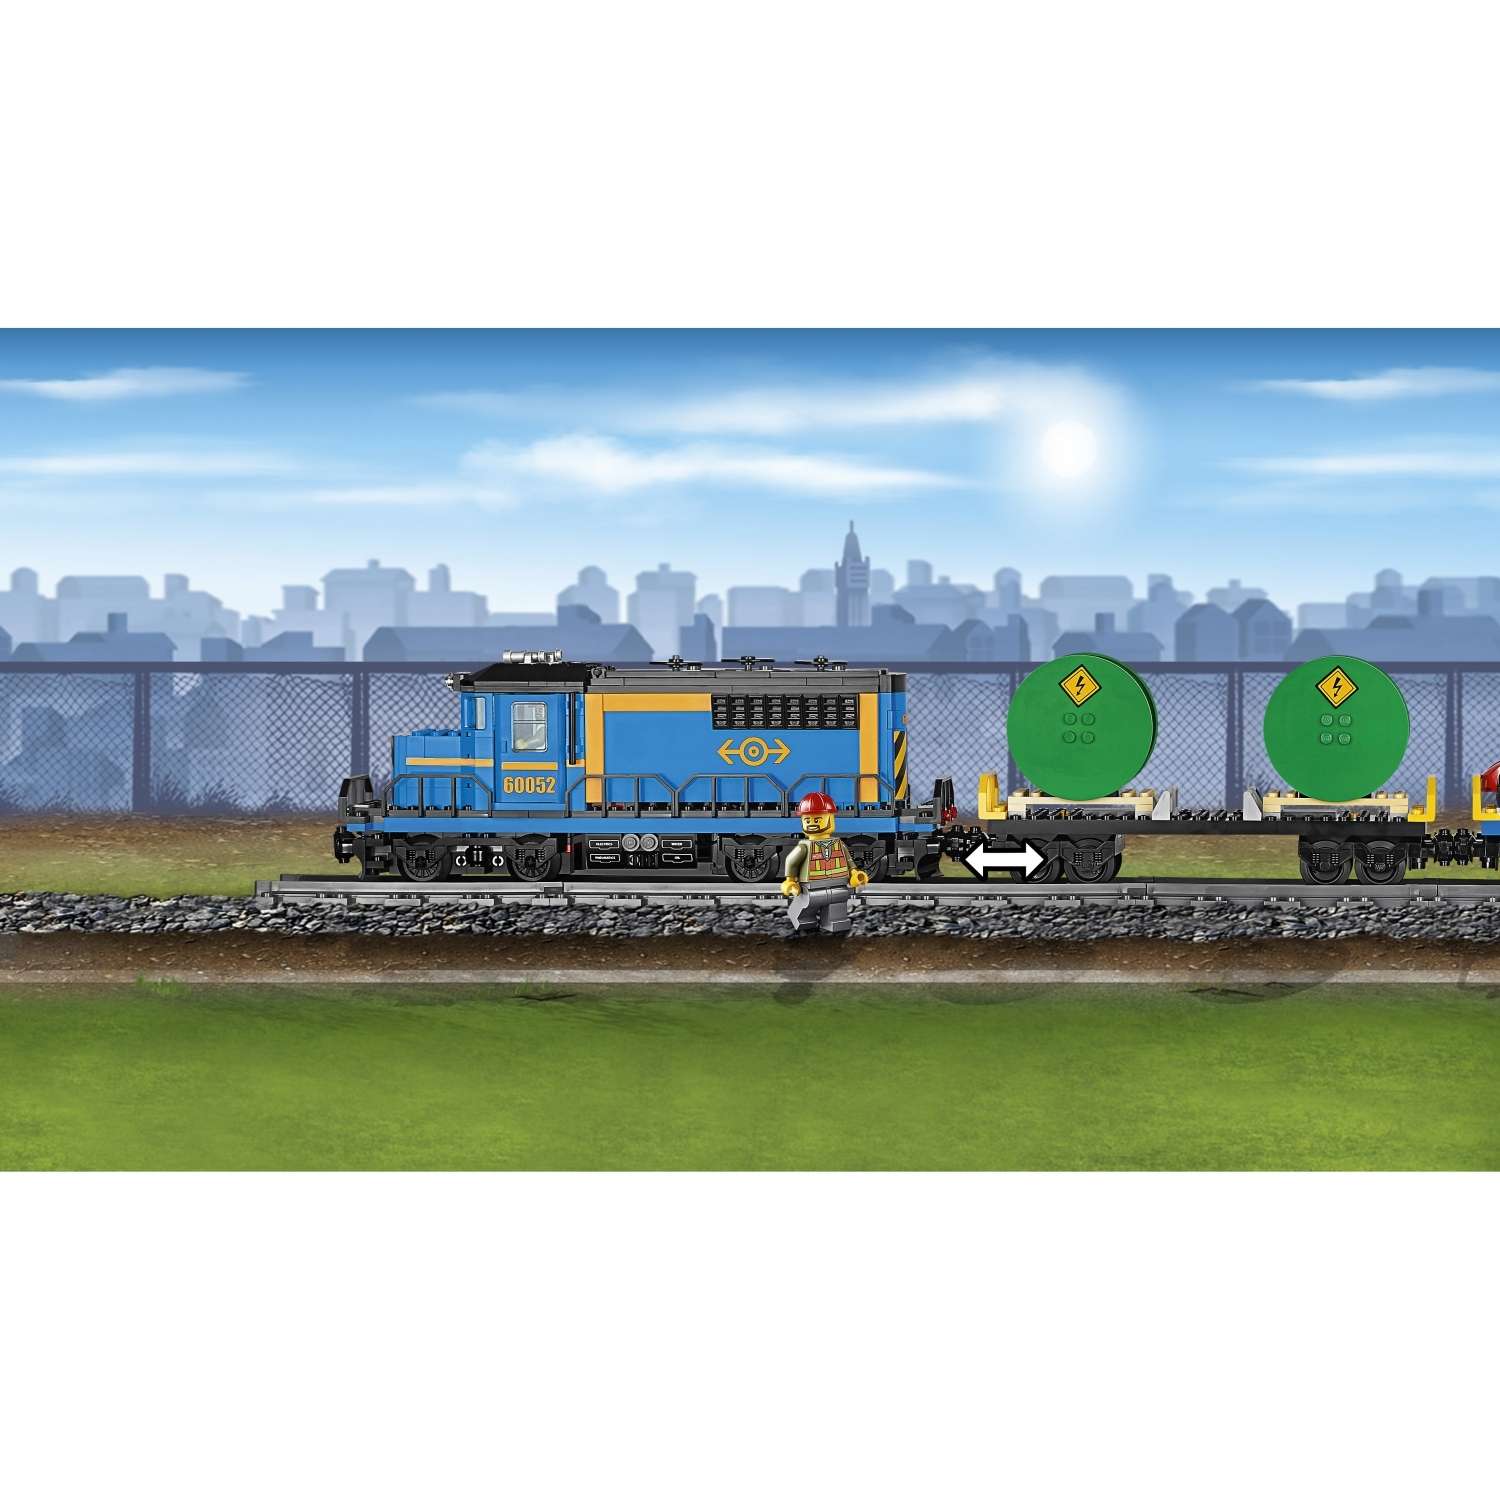 Конструктор LEGO City Trains Грузовой поезд (60052) - фото 9